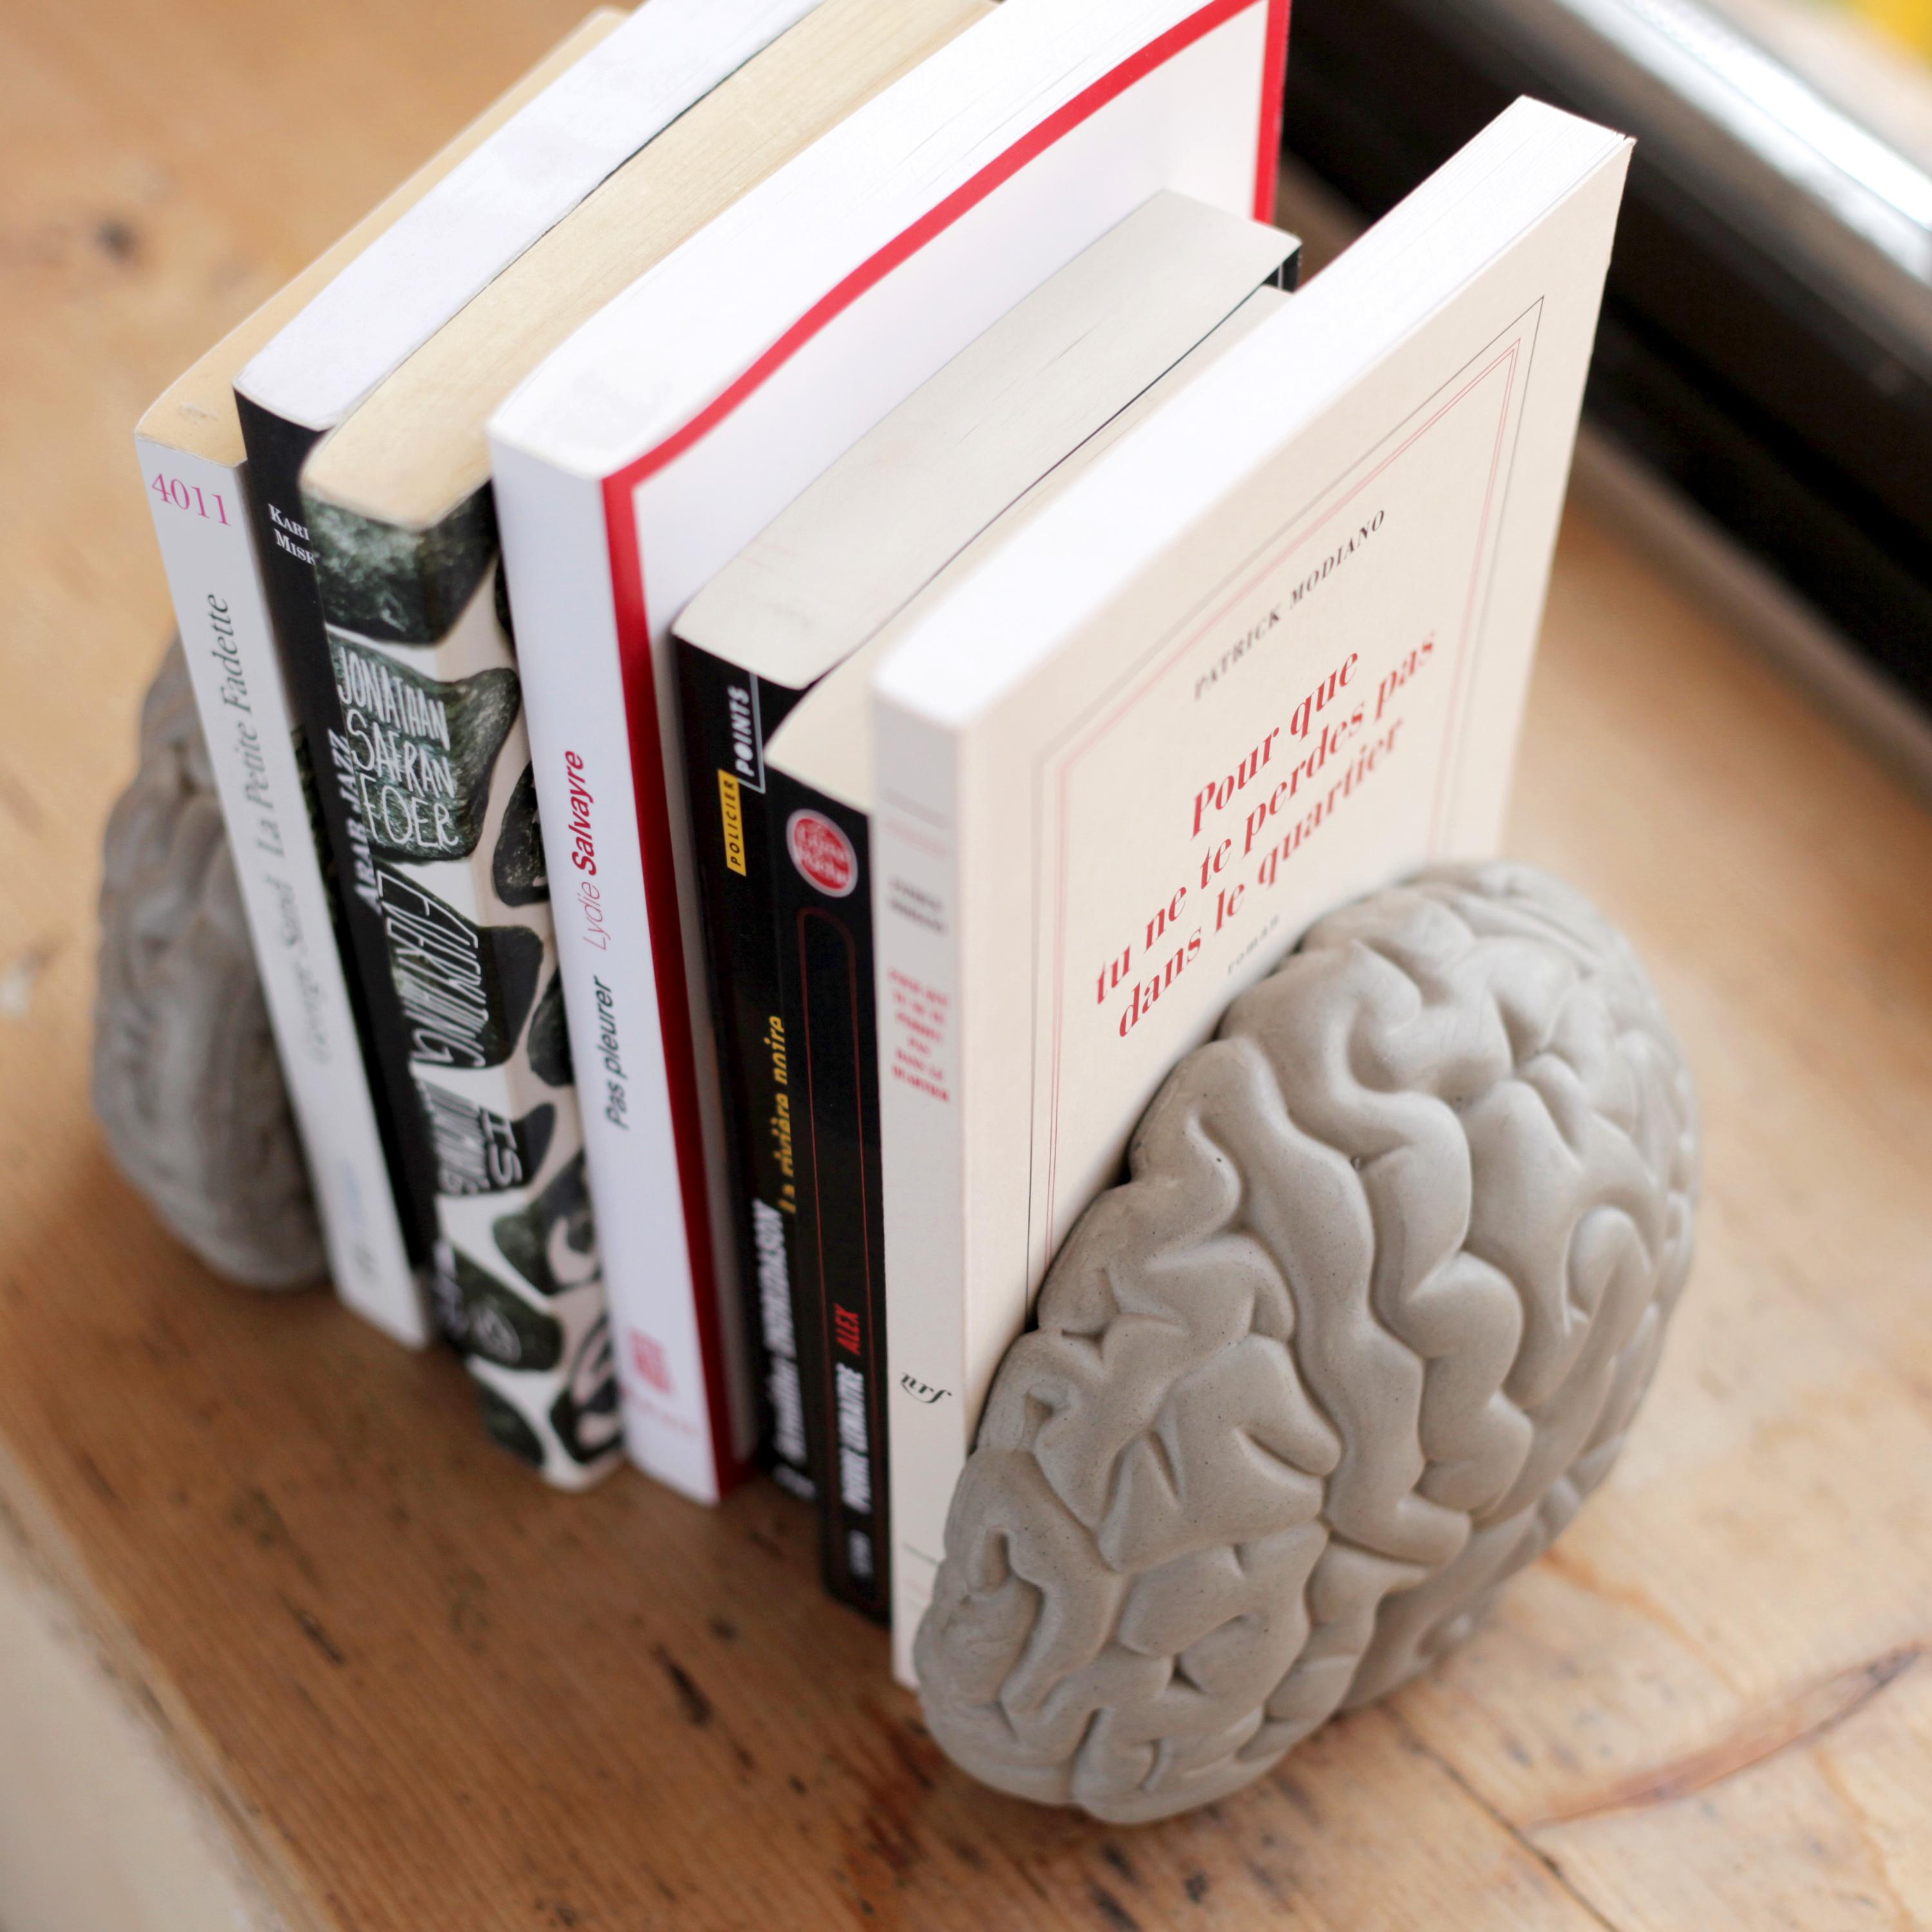 Les serre-livres en béton de matière grise conçus par Bertrand Jayr pour Lyon Béton placent les hémisphères du cerveau littéralement aux deux extrémités des maisons de notre savoir. Il apporte un moyen amusant et fonctionnel de stocker et